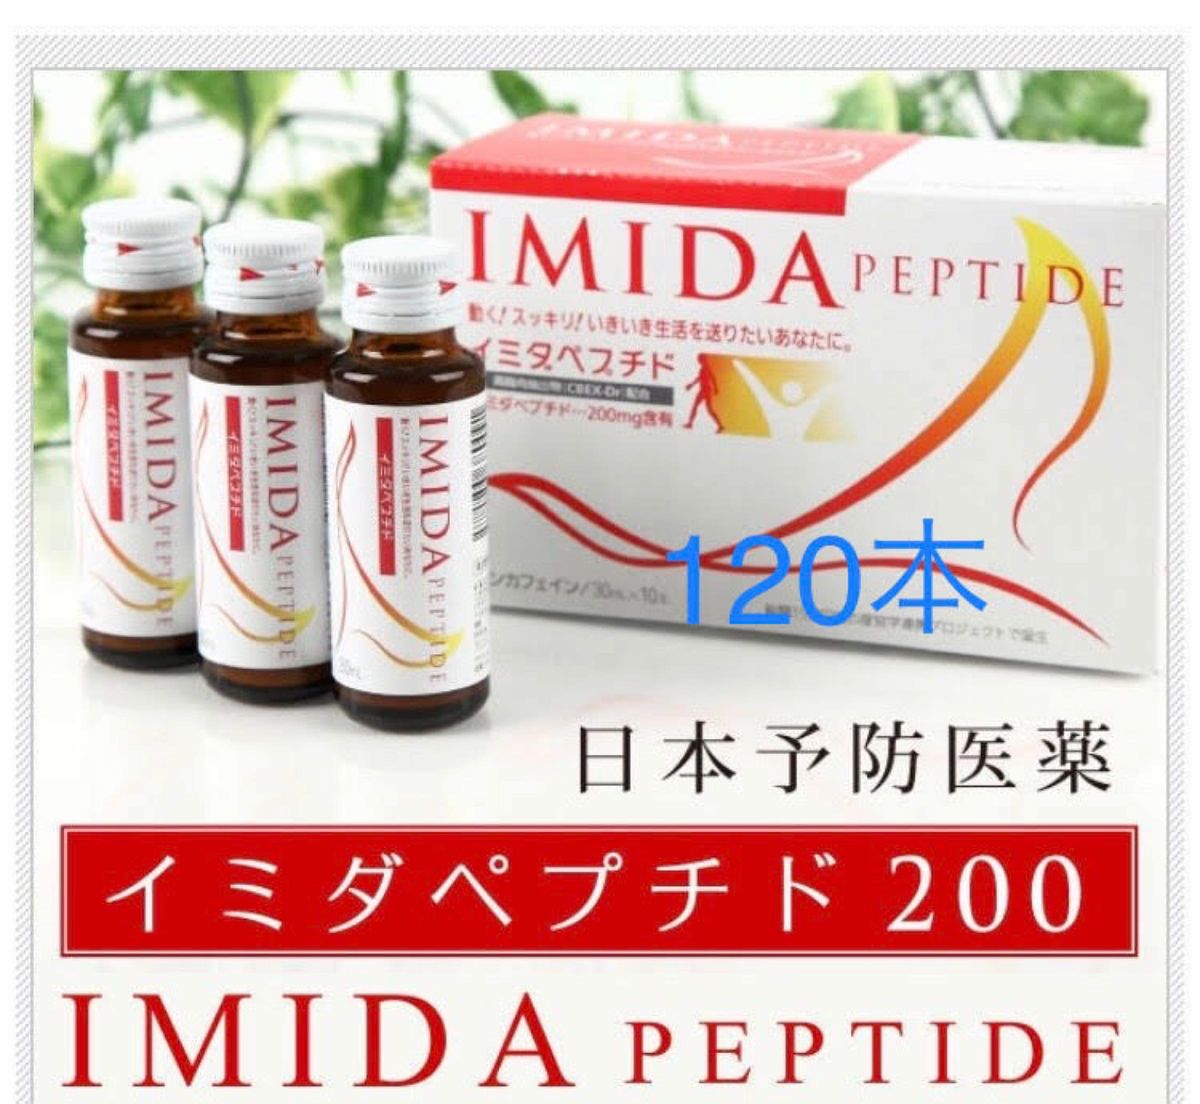 「イミダペプチド」30ml×120本入り 日本予防医